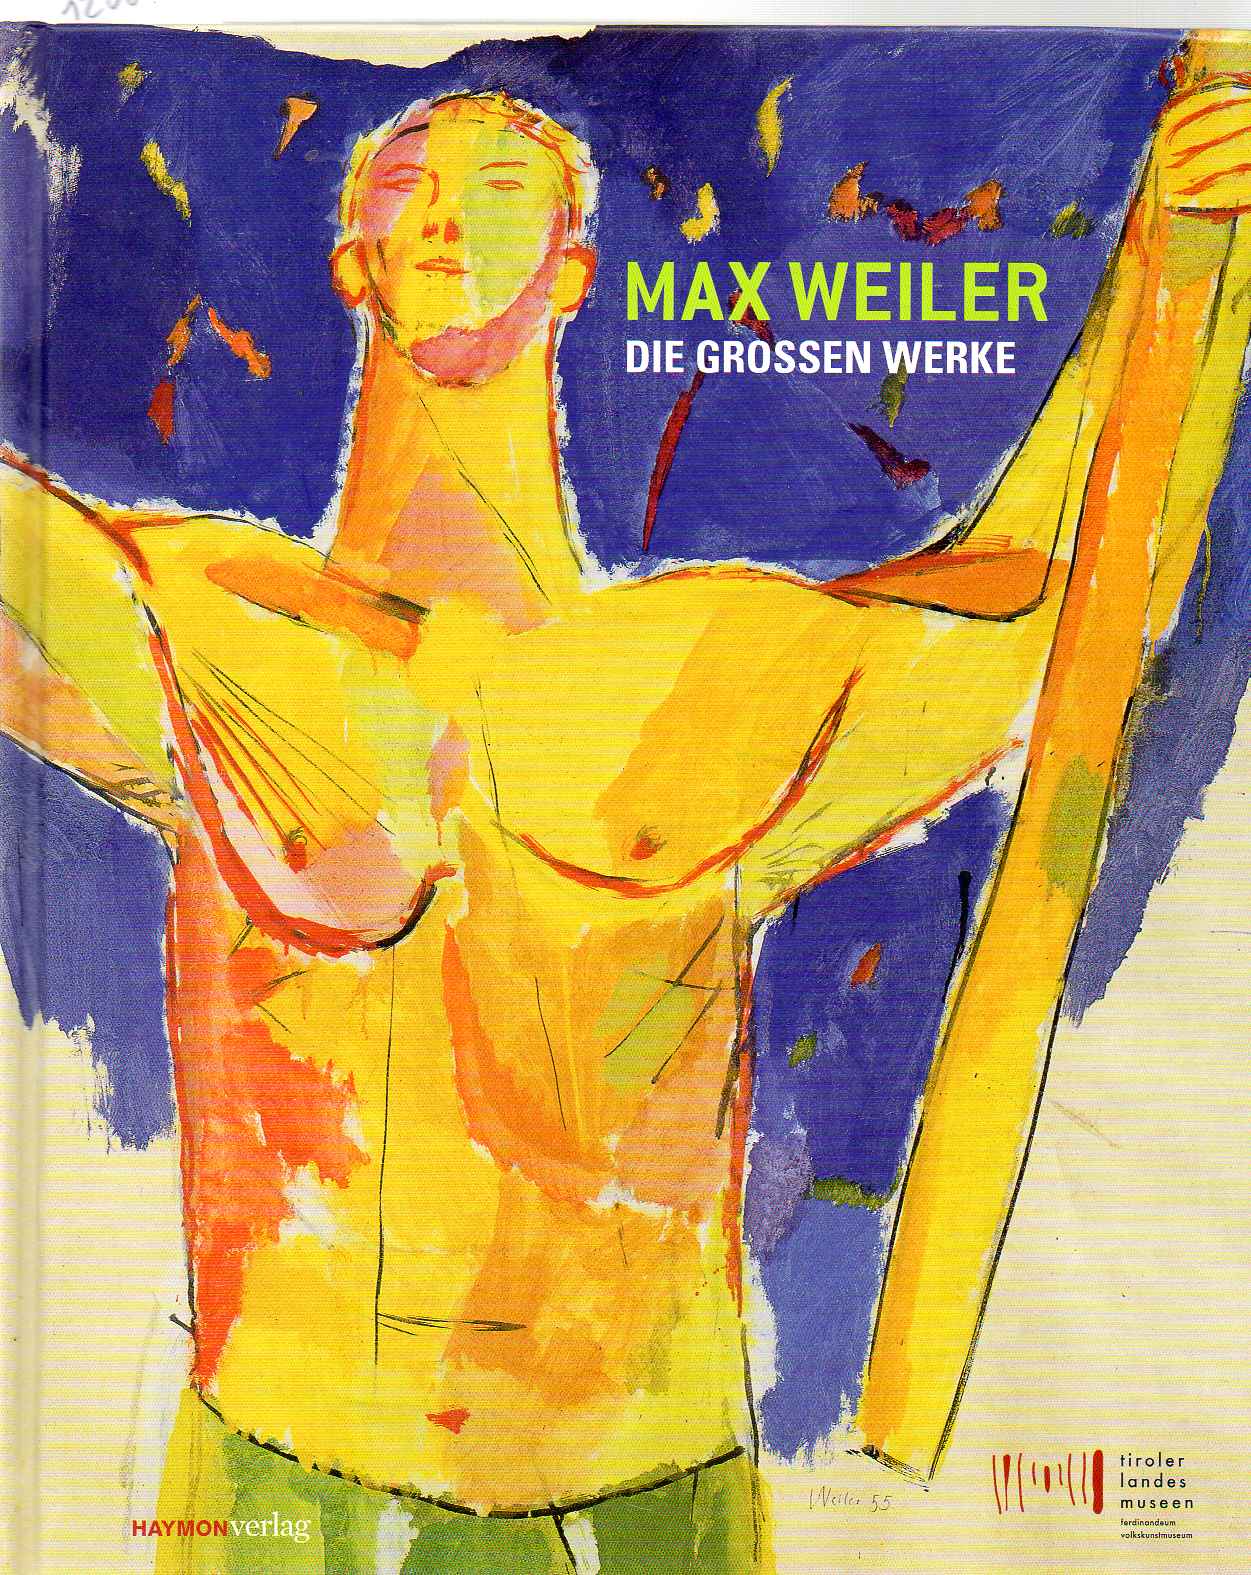 Max Weiler. Die grossen Werke. Fresken, Mosaiken, Gemälde. Vom Entwurf zur Ausführung. - Weiler Max